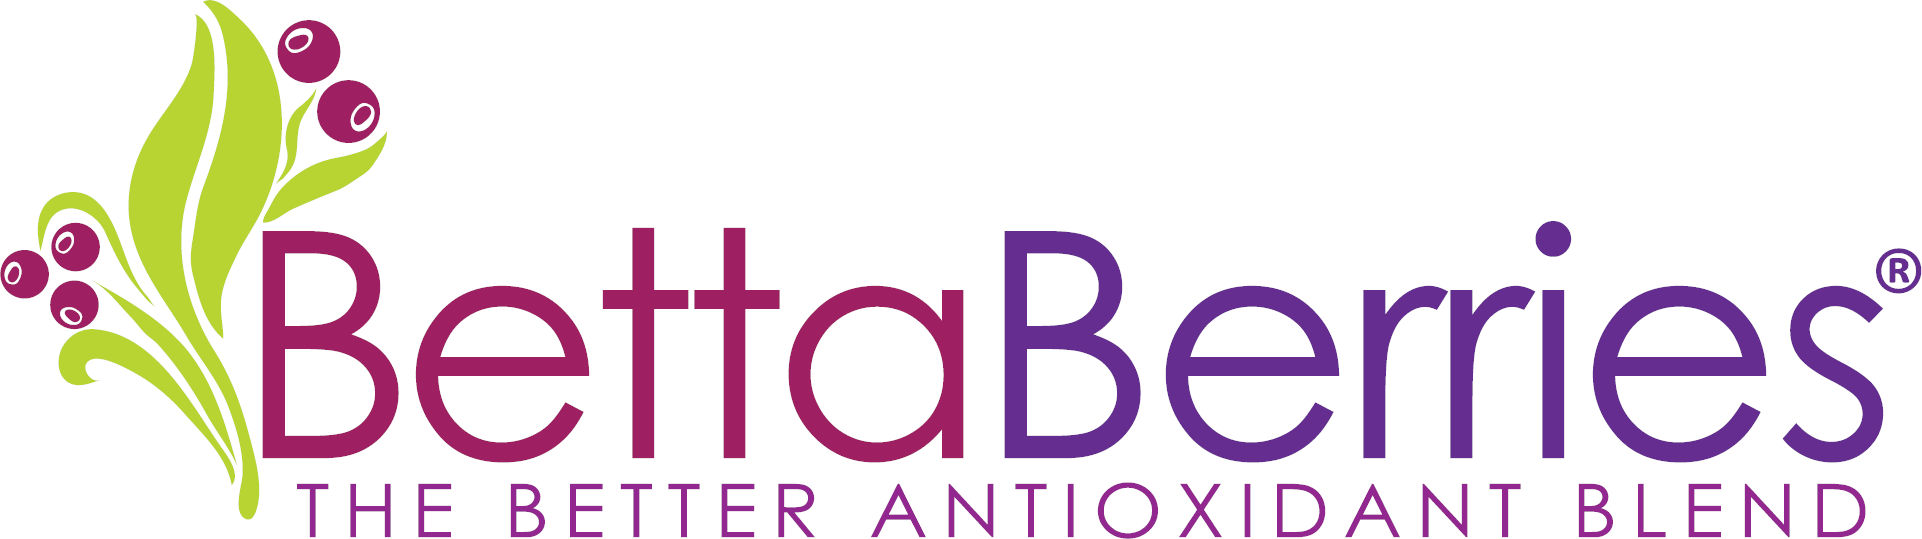 BettaBerries Antioxidant Blend Logo